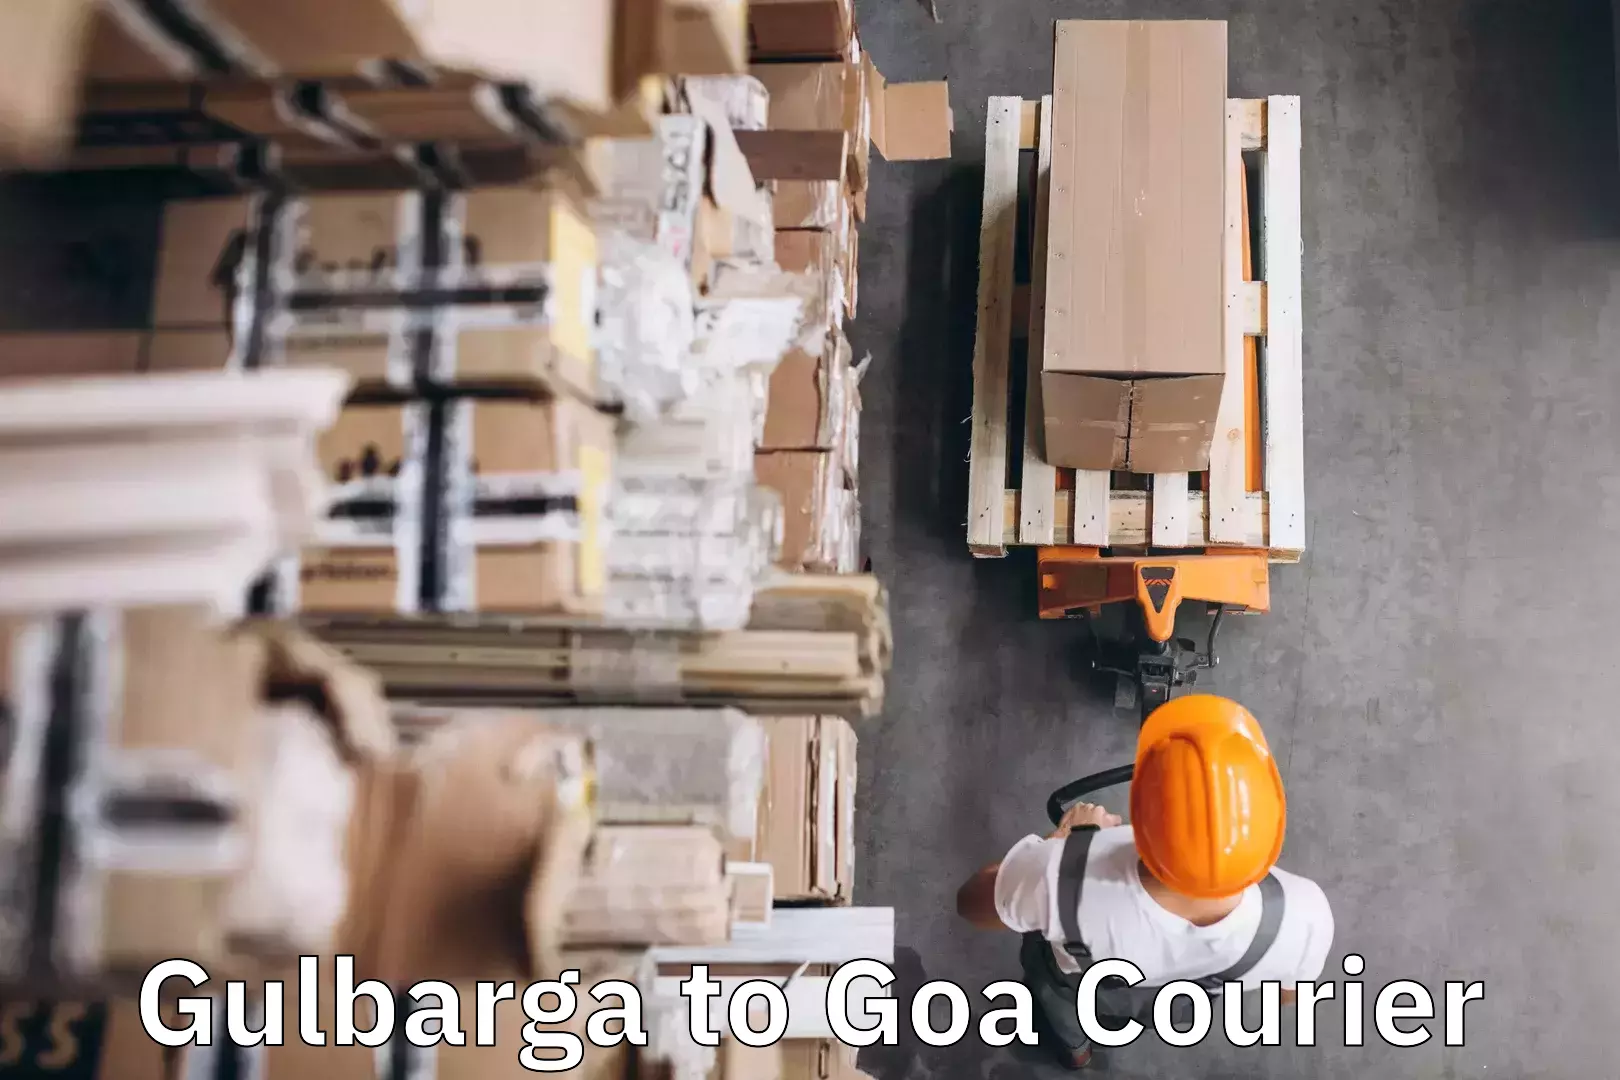 Luggage forwarding service Gulbarga to Goa